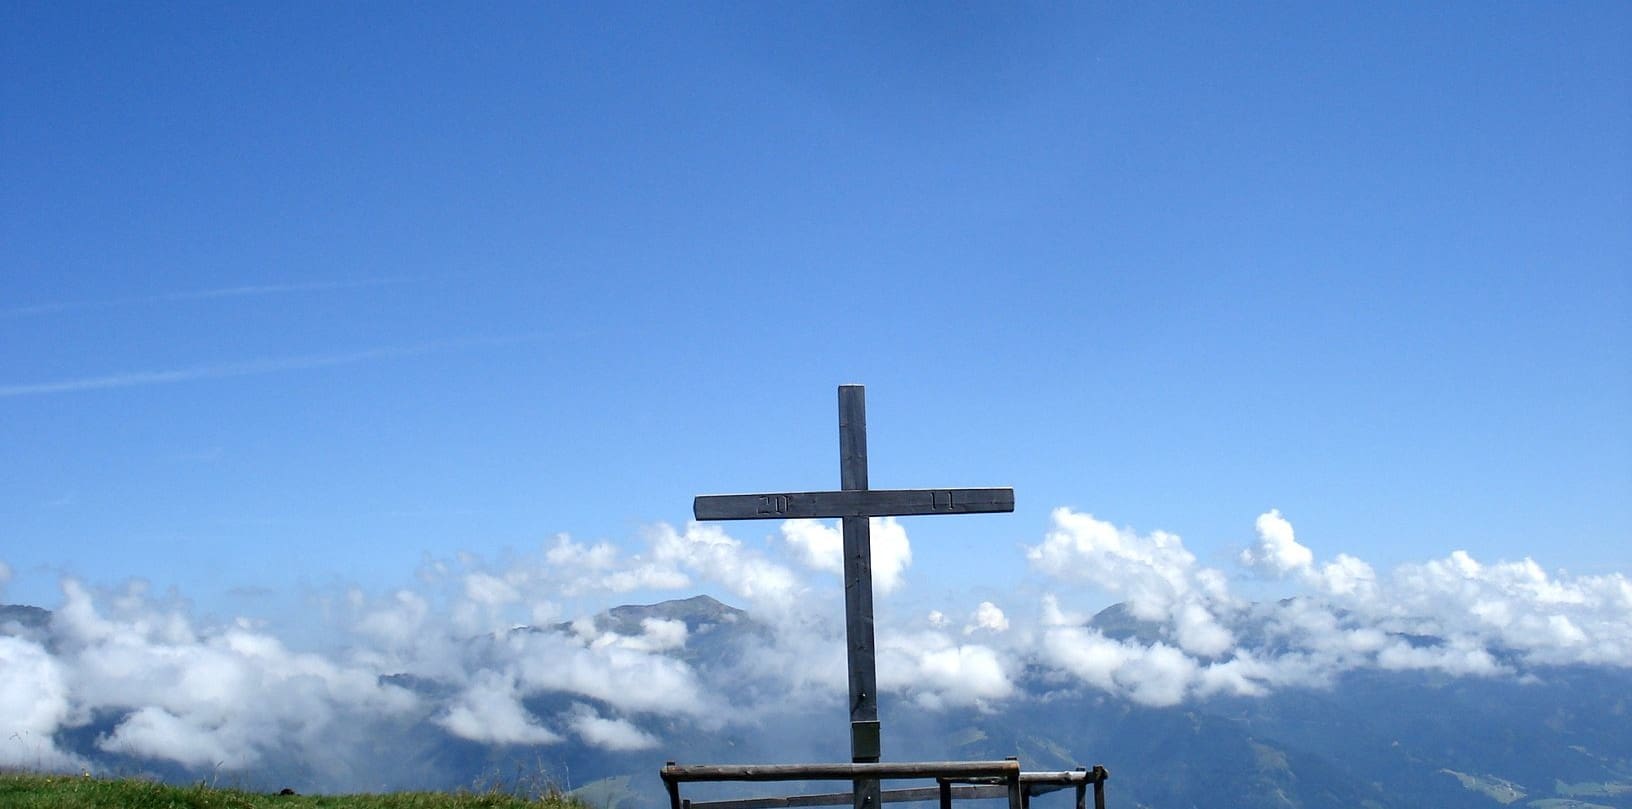 Ein einfaches Holzkreuz steht auf der Poelsenalm Platte gegen einen strahlend blauen Himmel, umrahmt von schwebenden weißen Wolken und dem fernen Blick auf die nebelverhangenen Berge